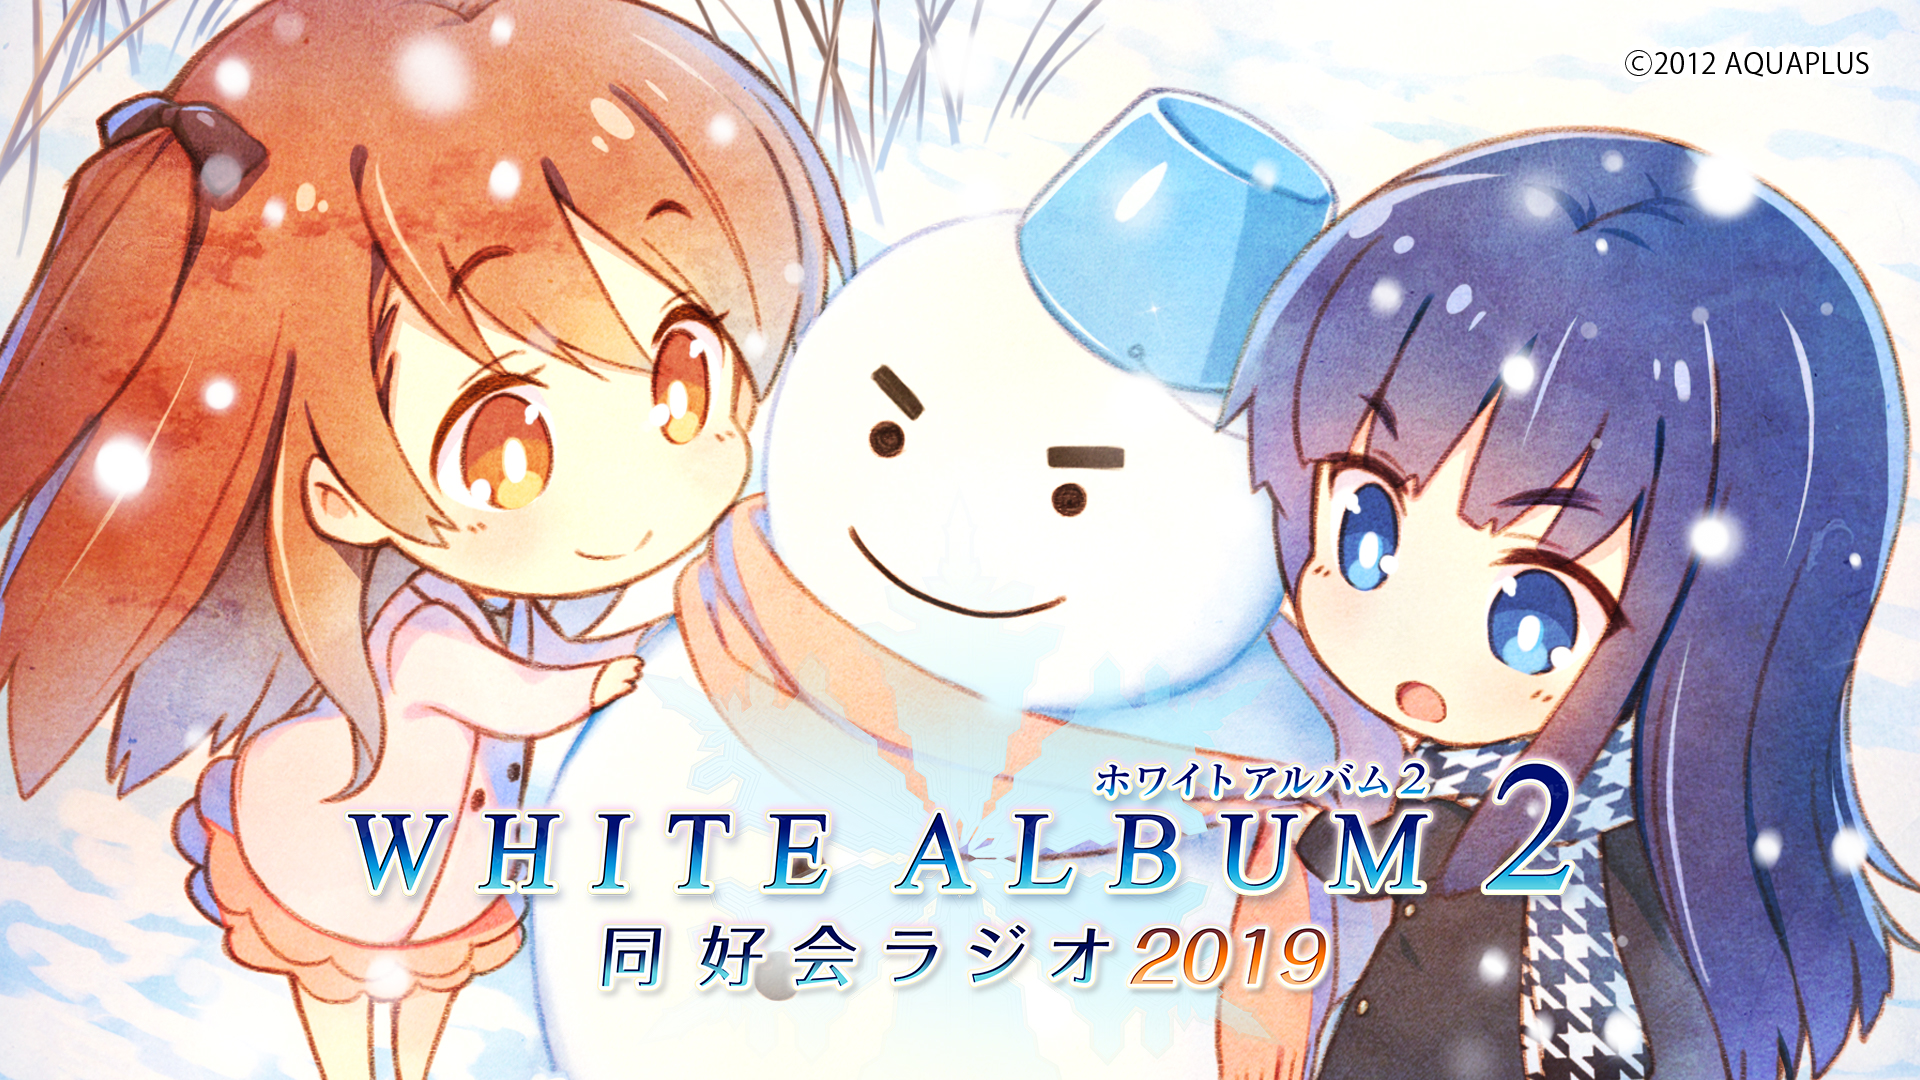 スペシャル White Album2 幸せの向こう側 Ps Vita